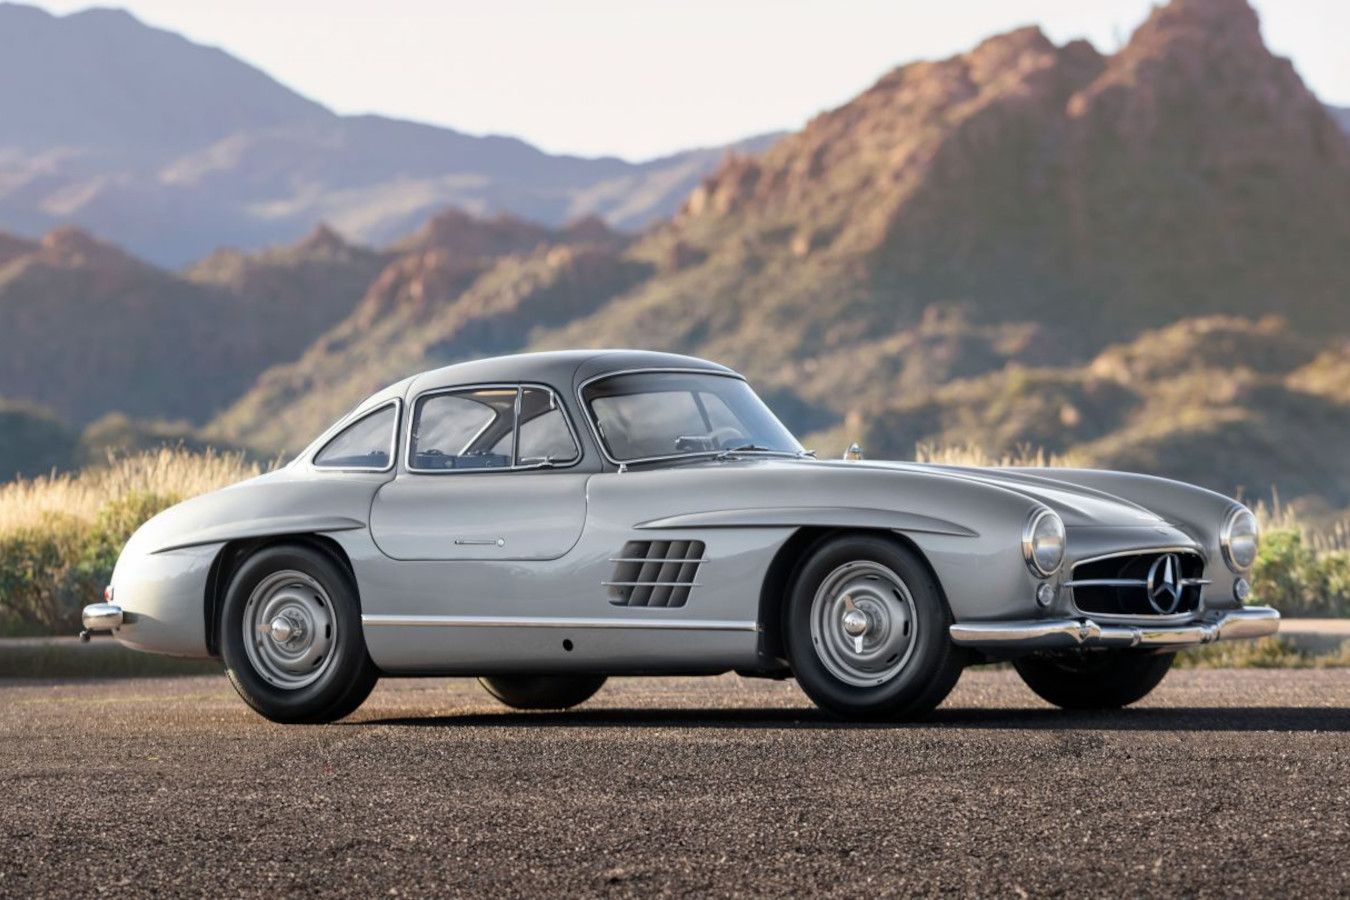 Редкий Mercedes-Benz 1955 года выставлен на аукцион. Таких менее 30 в мире